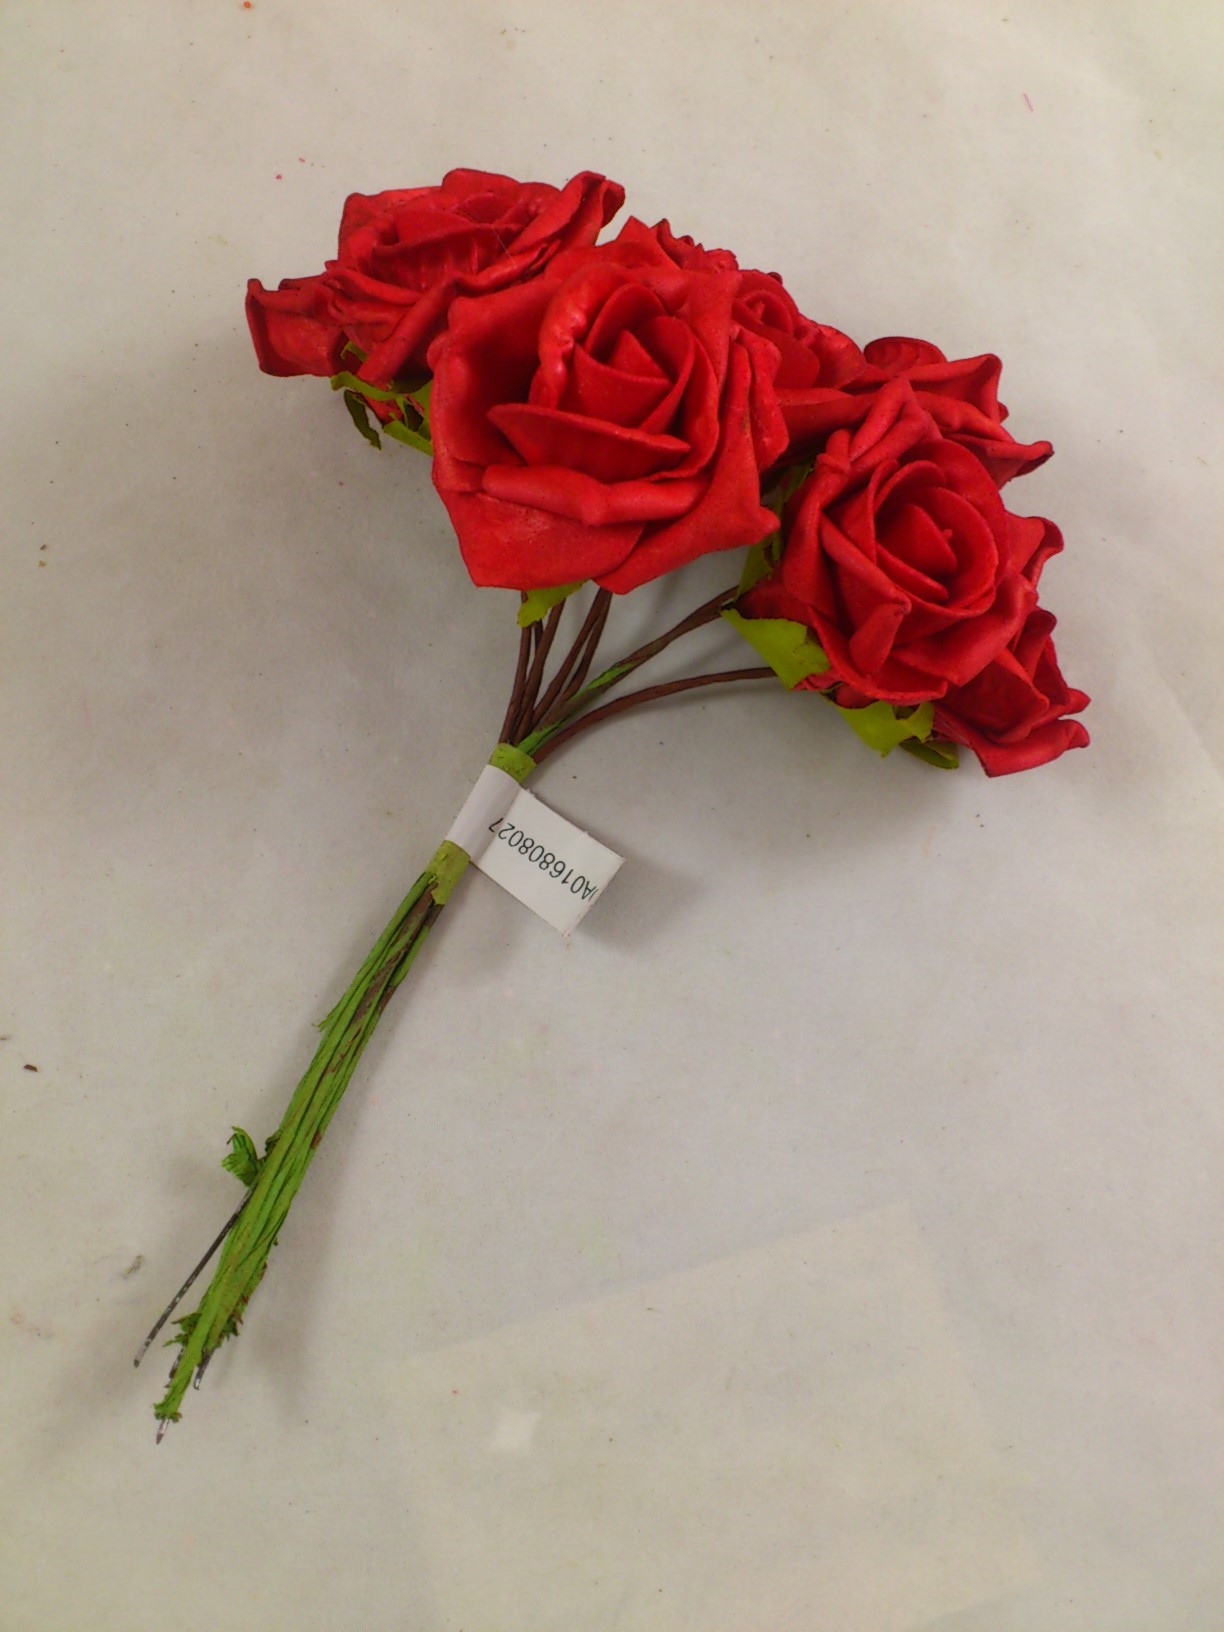 Rose en mousse 6 cm rouge (7 p.) -  Bloemschikken|Bloemschikmateriaal.be|Gratis verzending vanaf €40